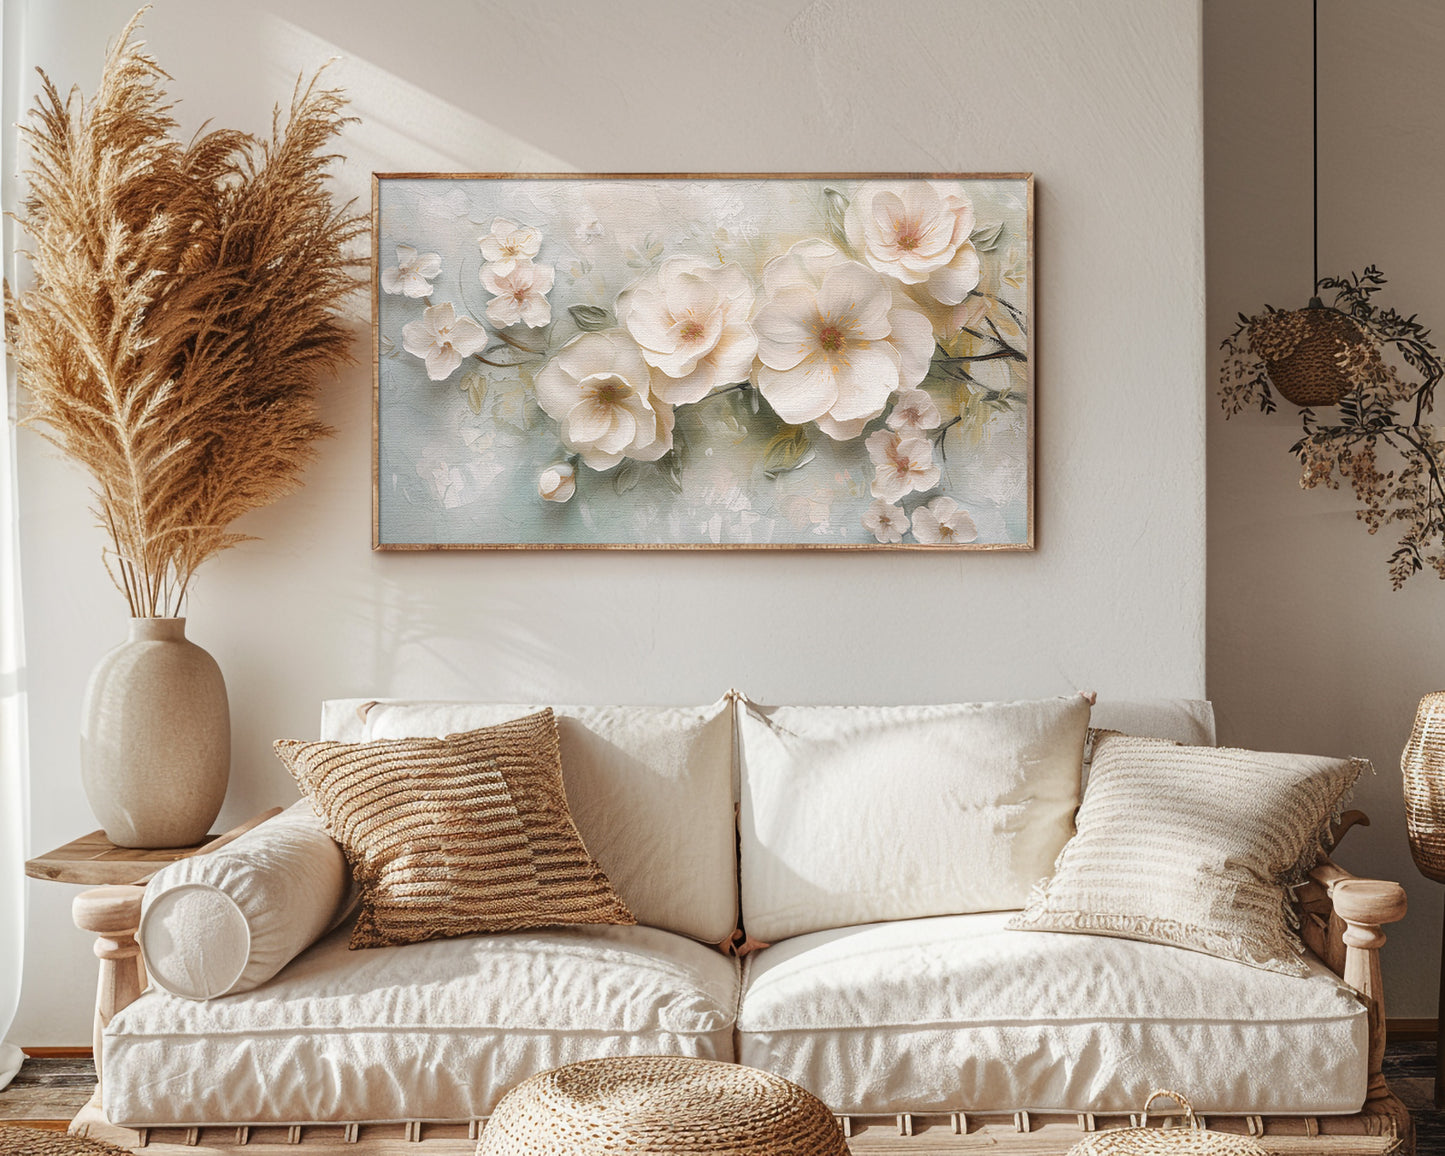 Delicate White Flowers Frame TV Art Wallpaper